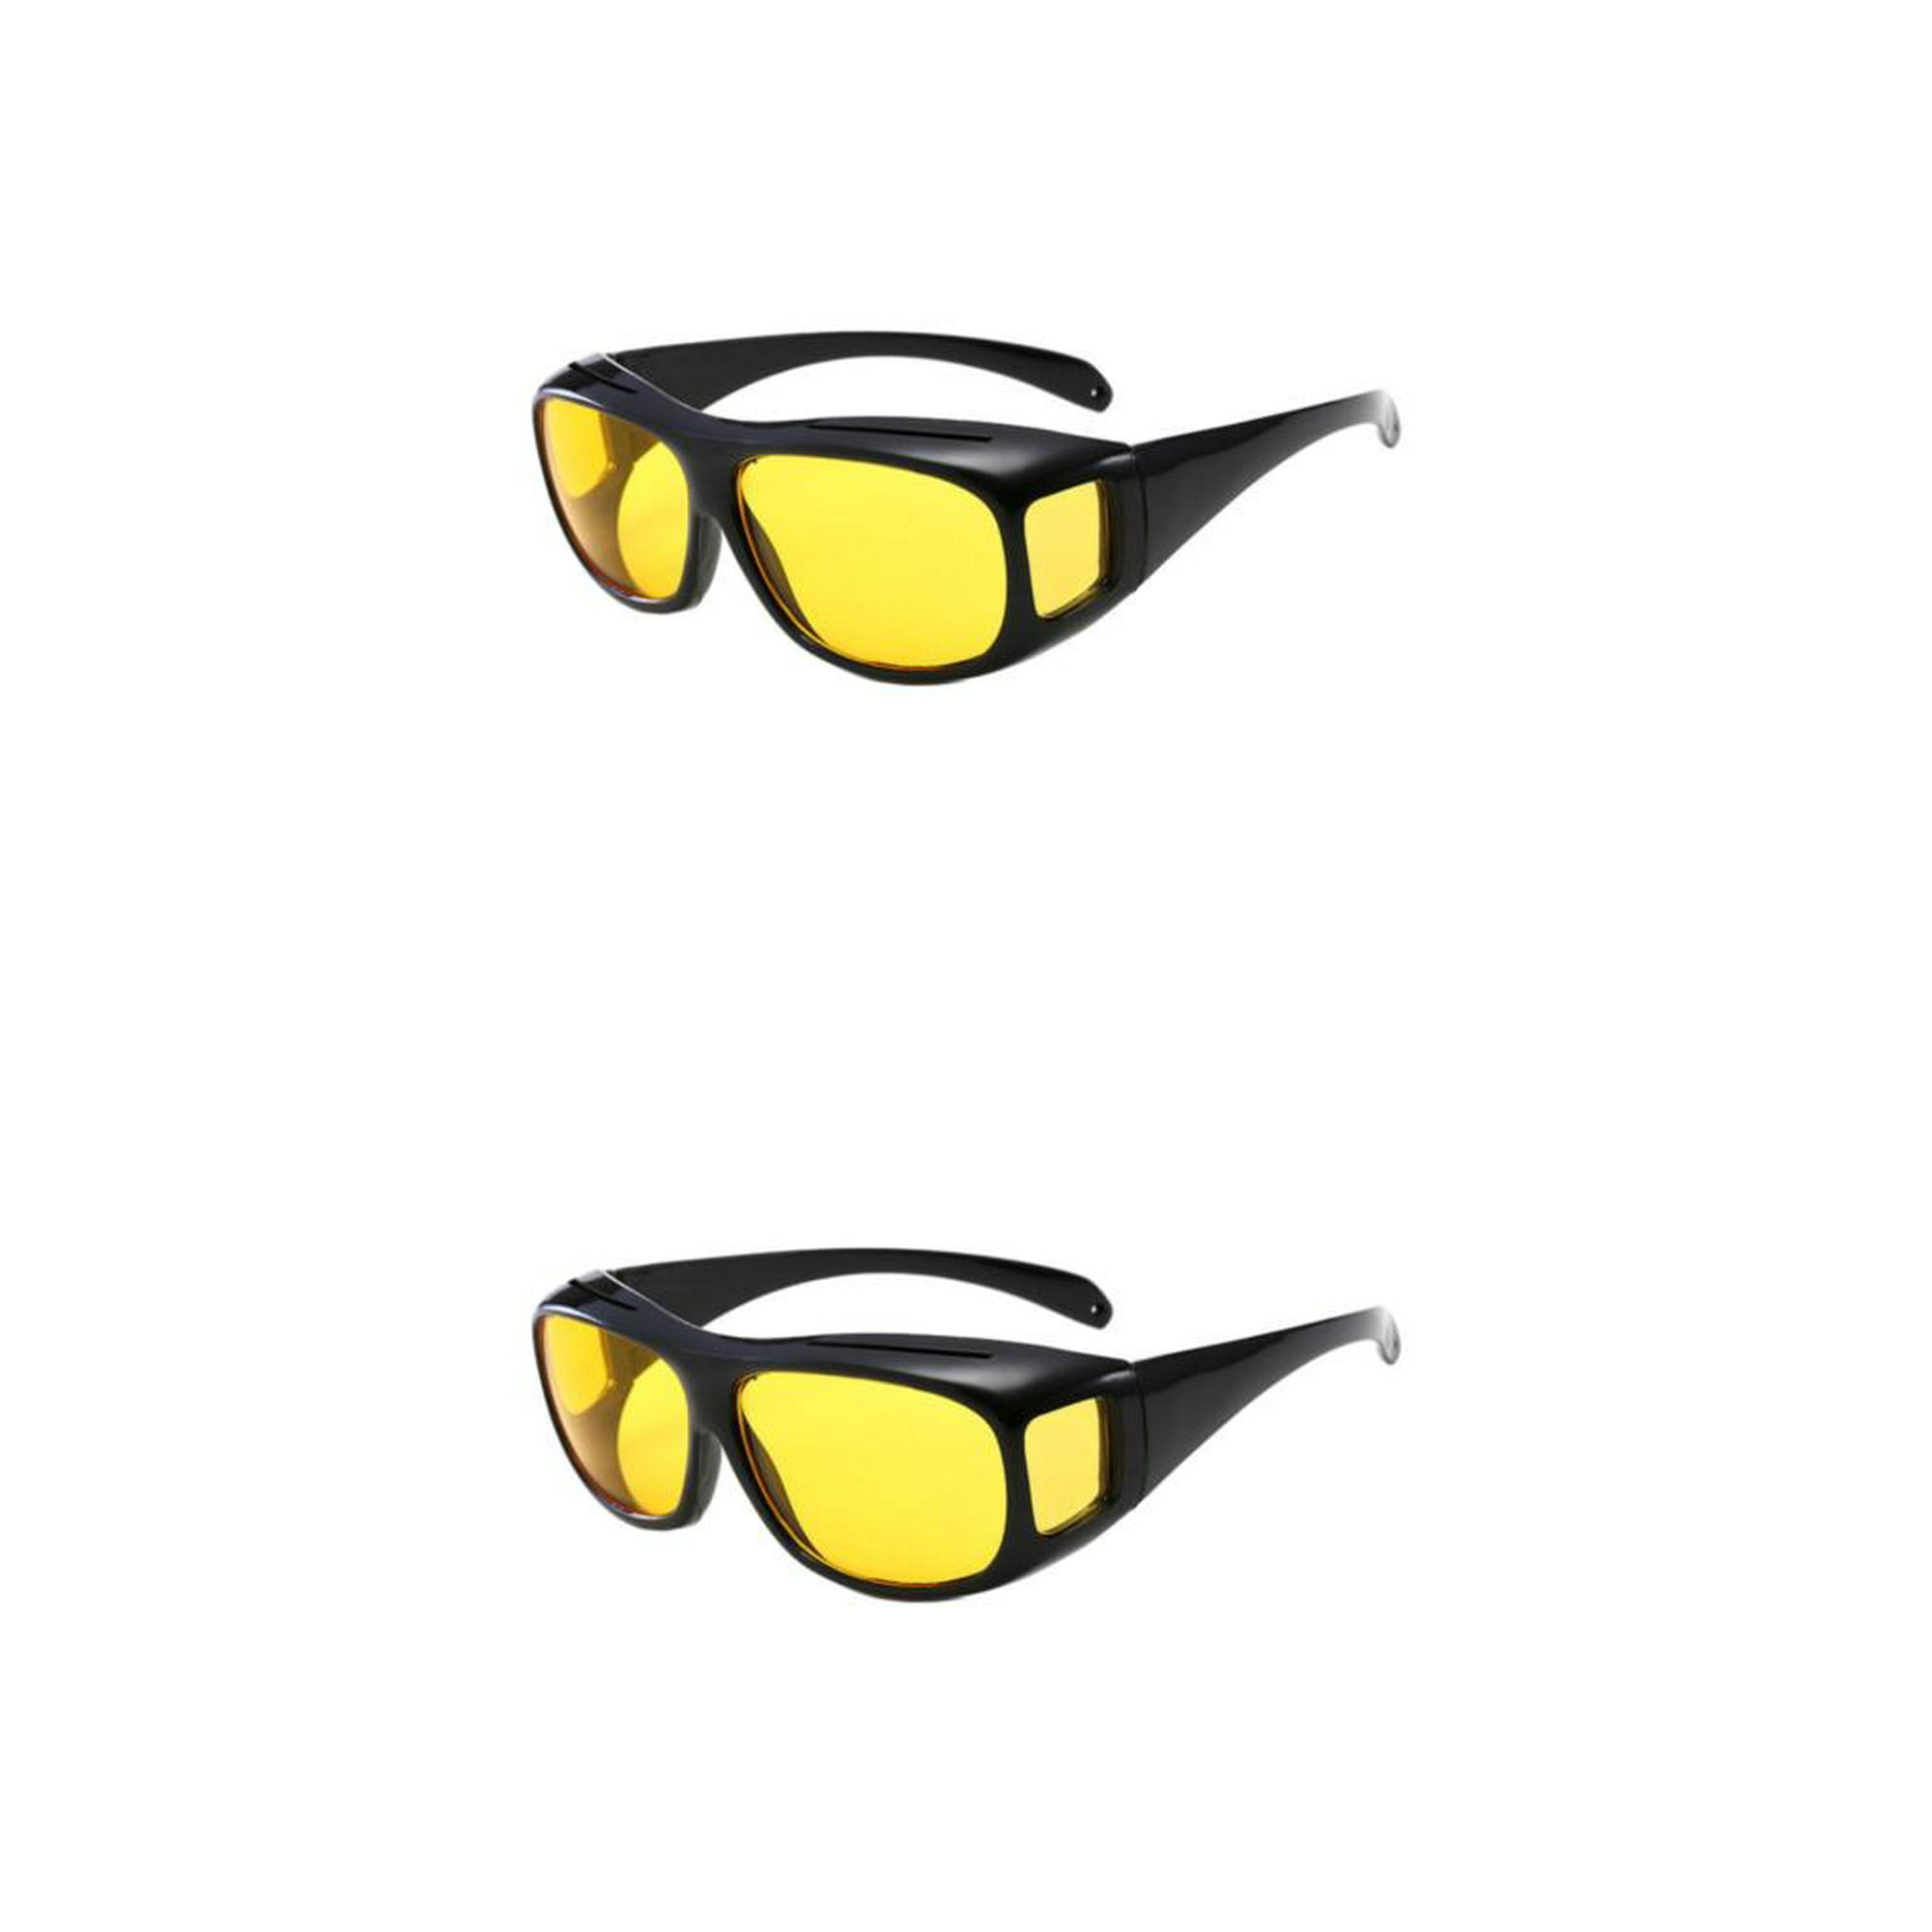 Eigraketly Gafas ligeras para conducir de noche, lentes polarizadas cómodas  y confiables, gafas de sol para conducir, color amarillo Amarillo 2piezas